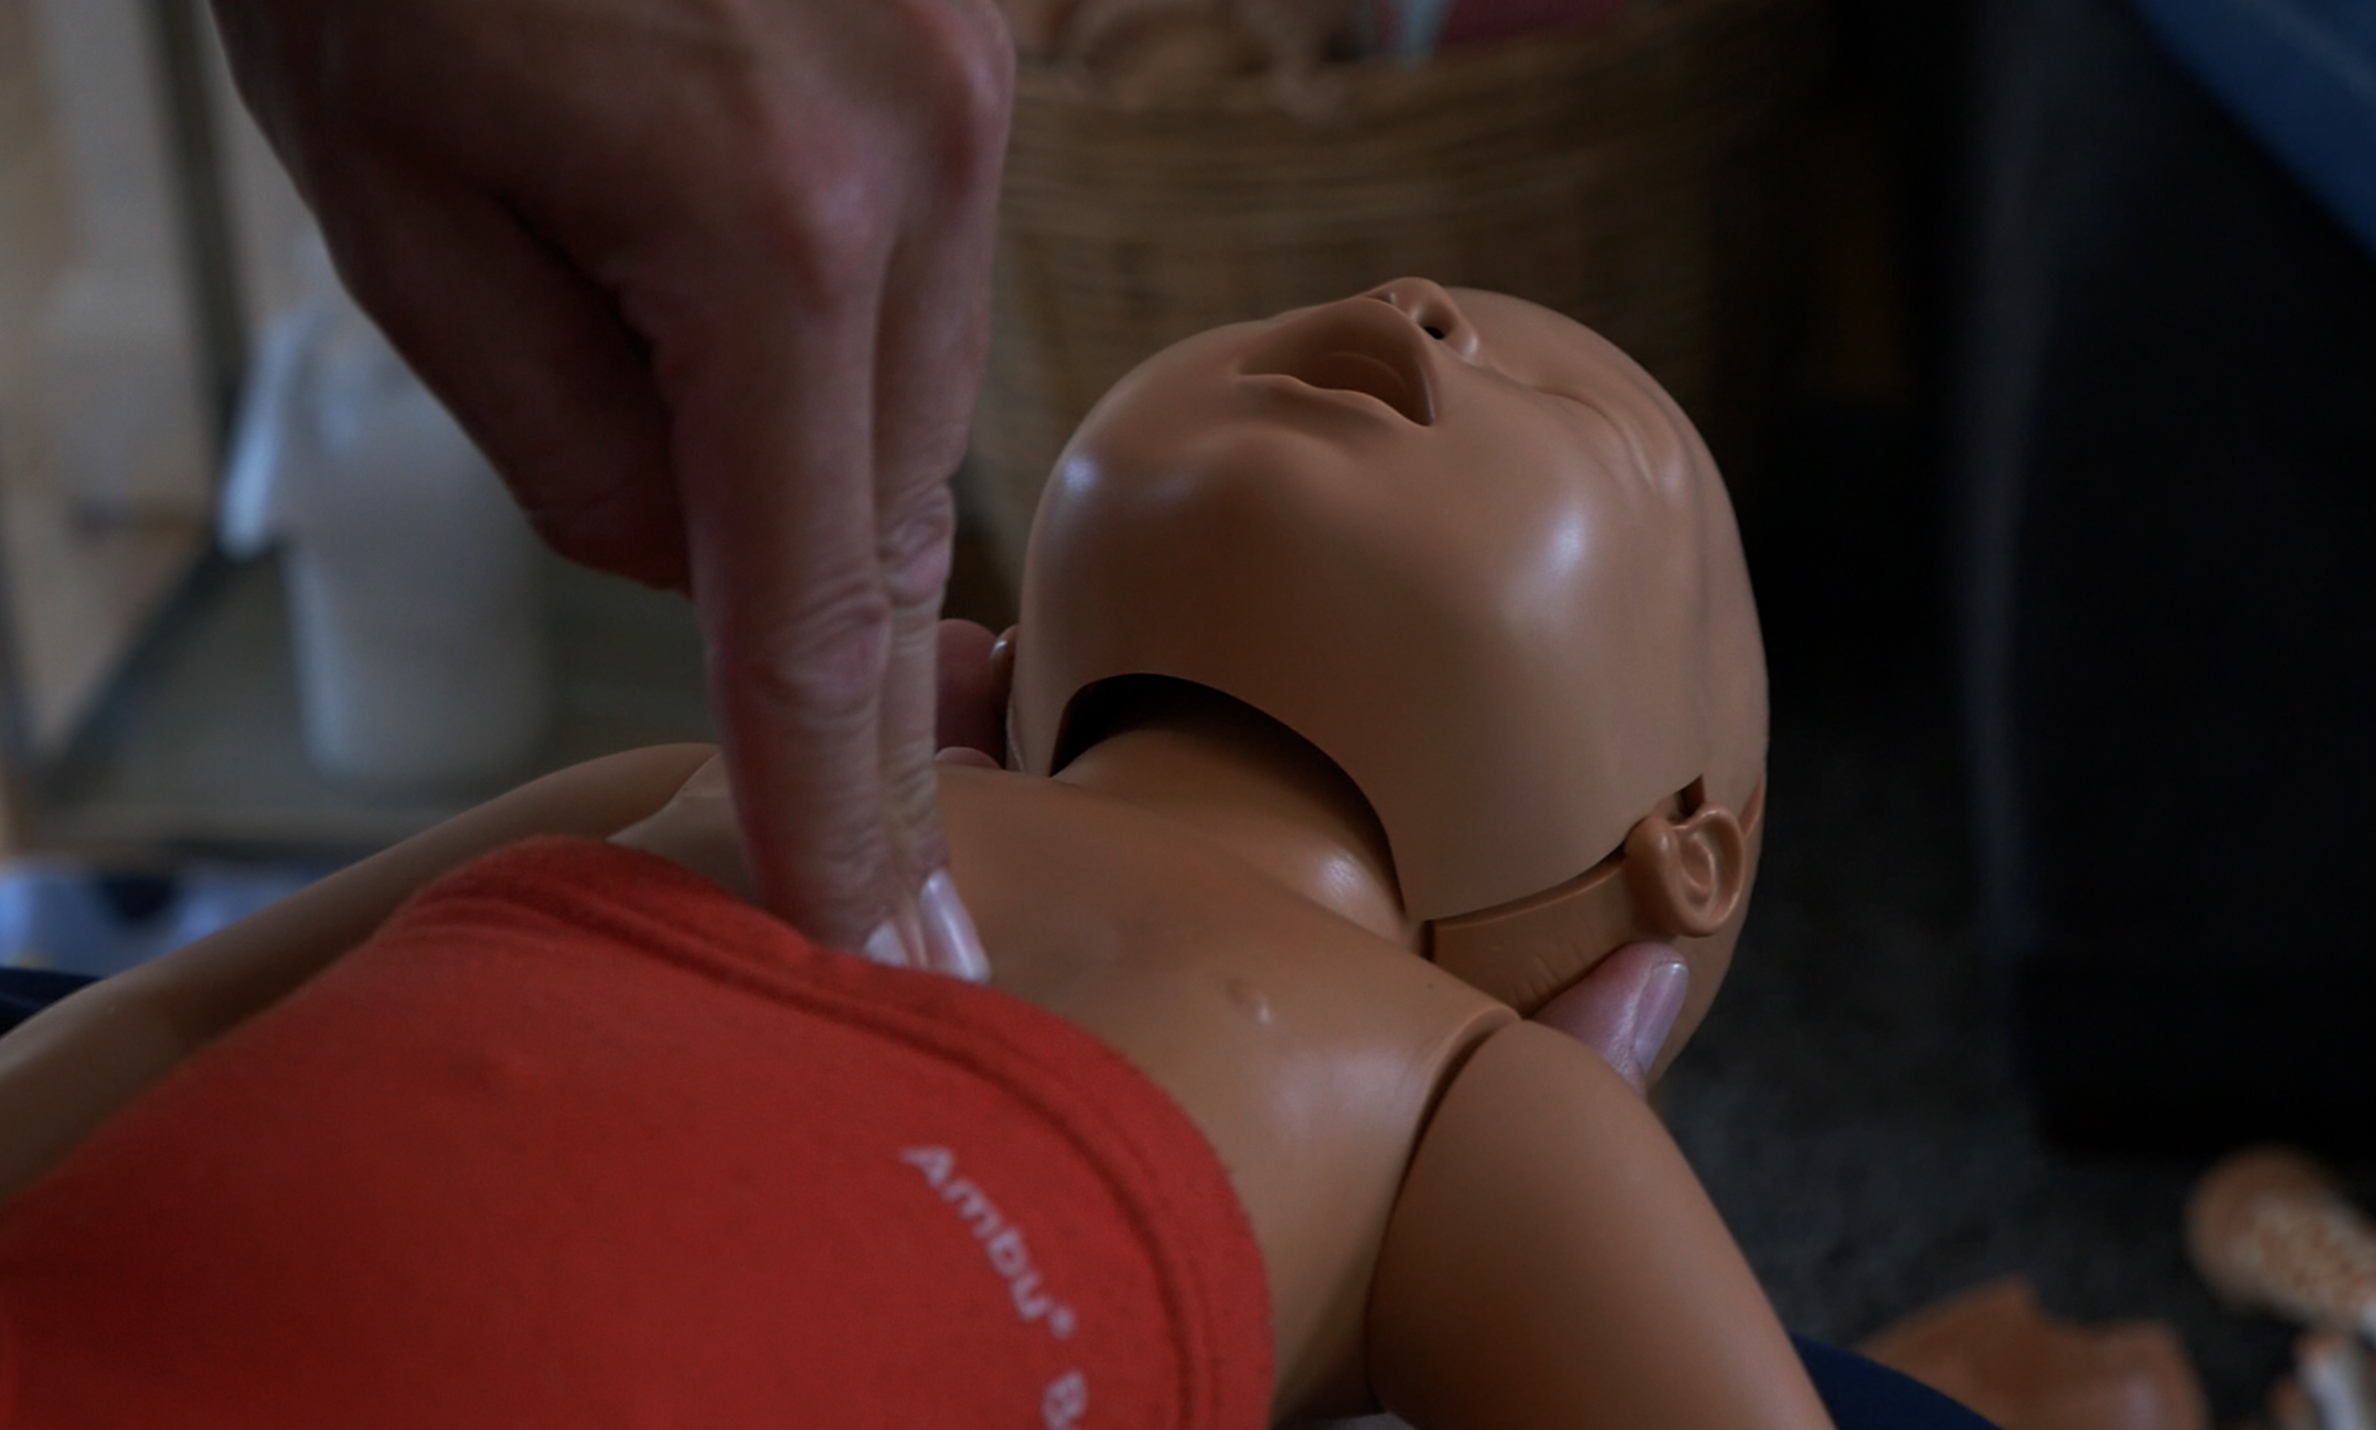 Tag et førstehjælpskursus og bliv i stand til at yde førstehjælp, hvis dit barn får noget galt i halsen